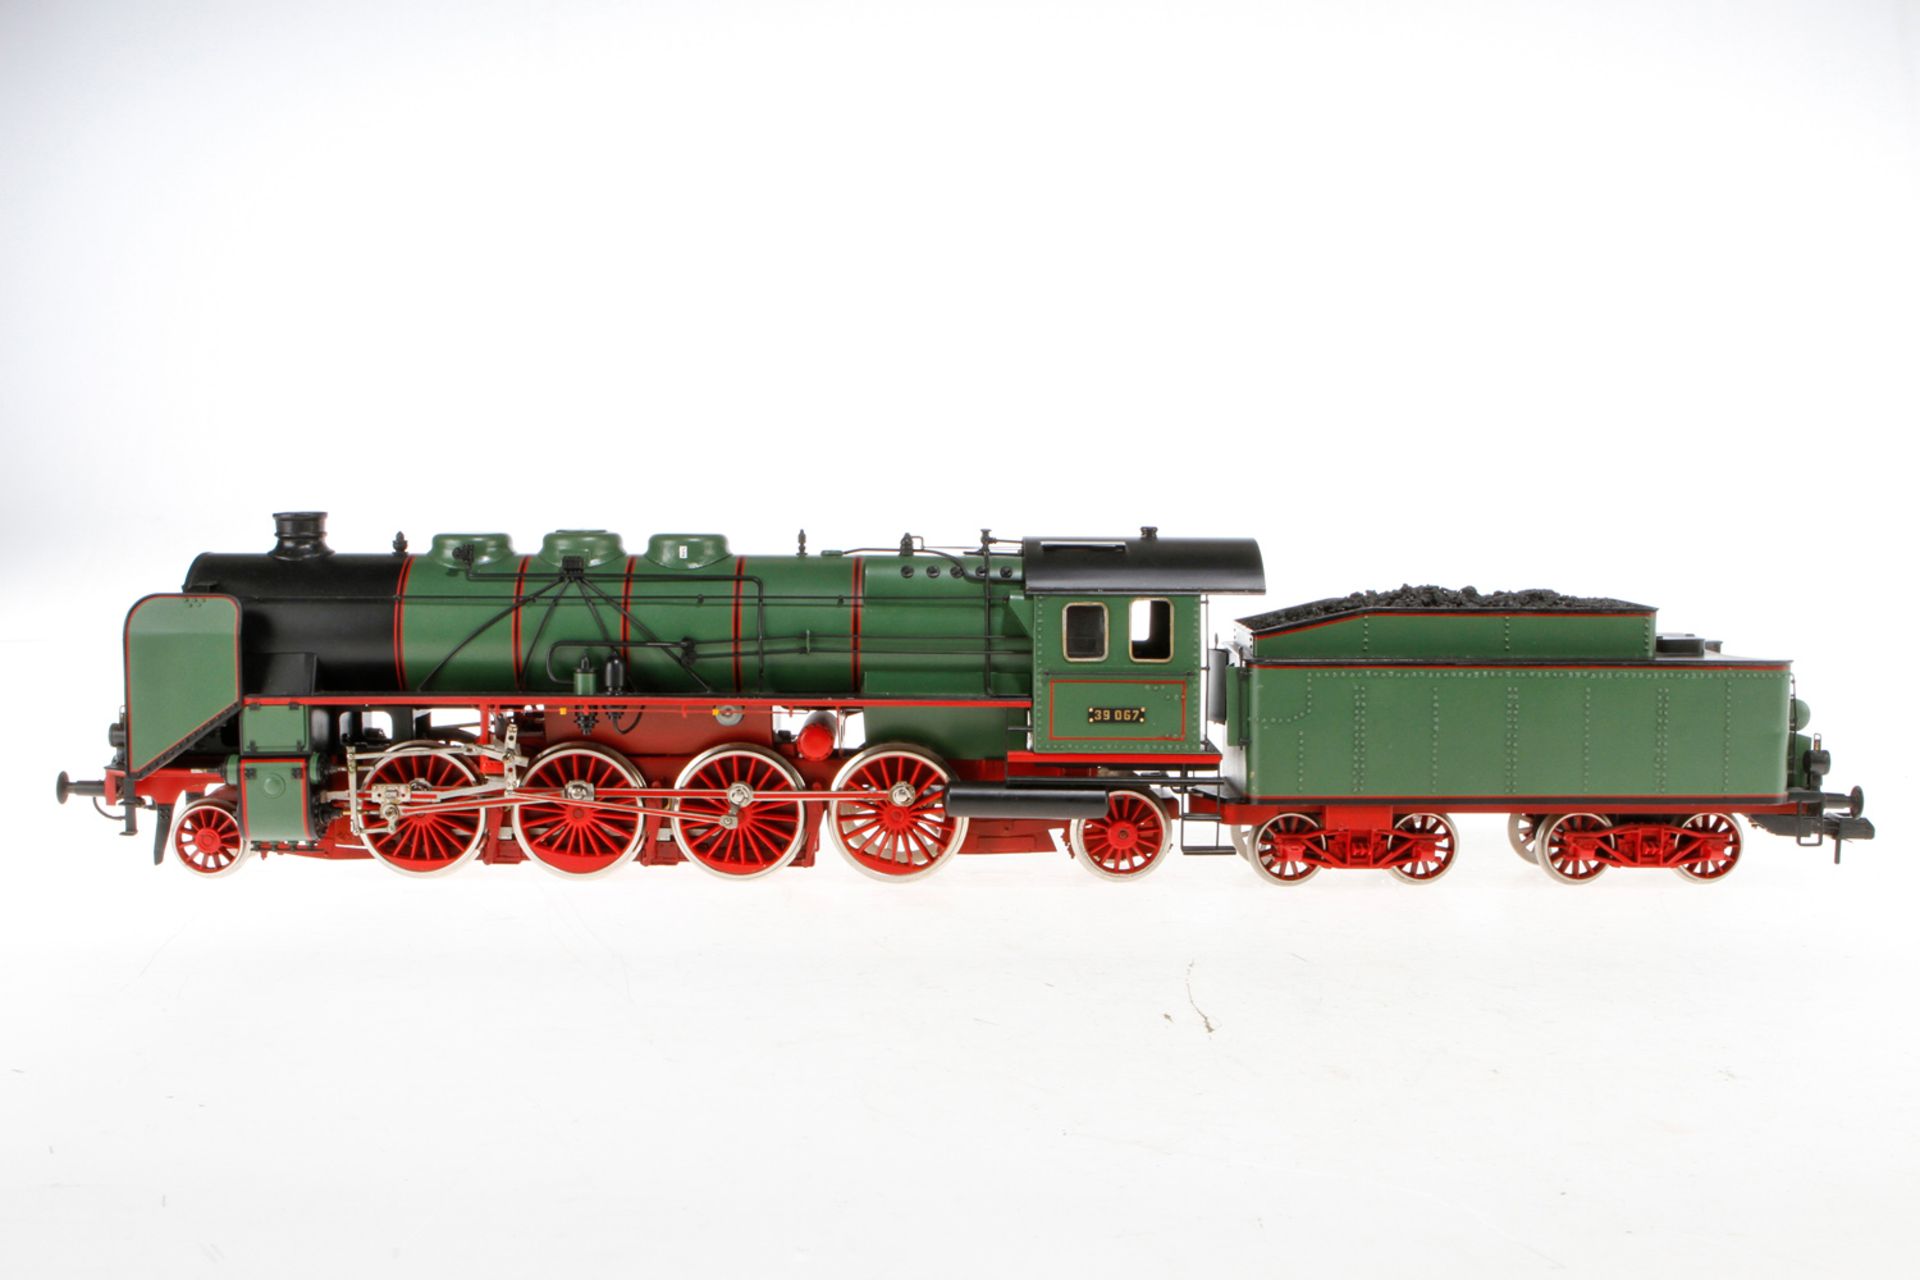 1-D-1 Schlepptenderlok "39 067", S 1, Metall, grün/schwarz, mit Märklin-Motor, Alterungsspuren,